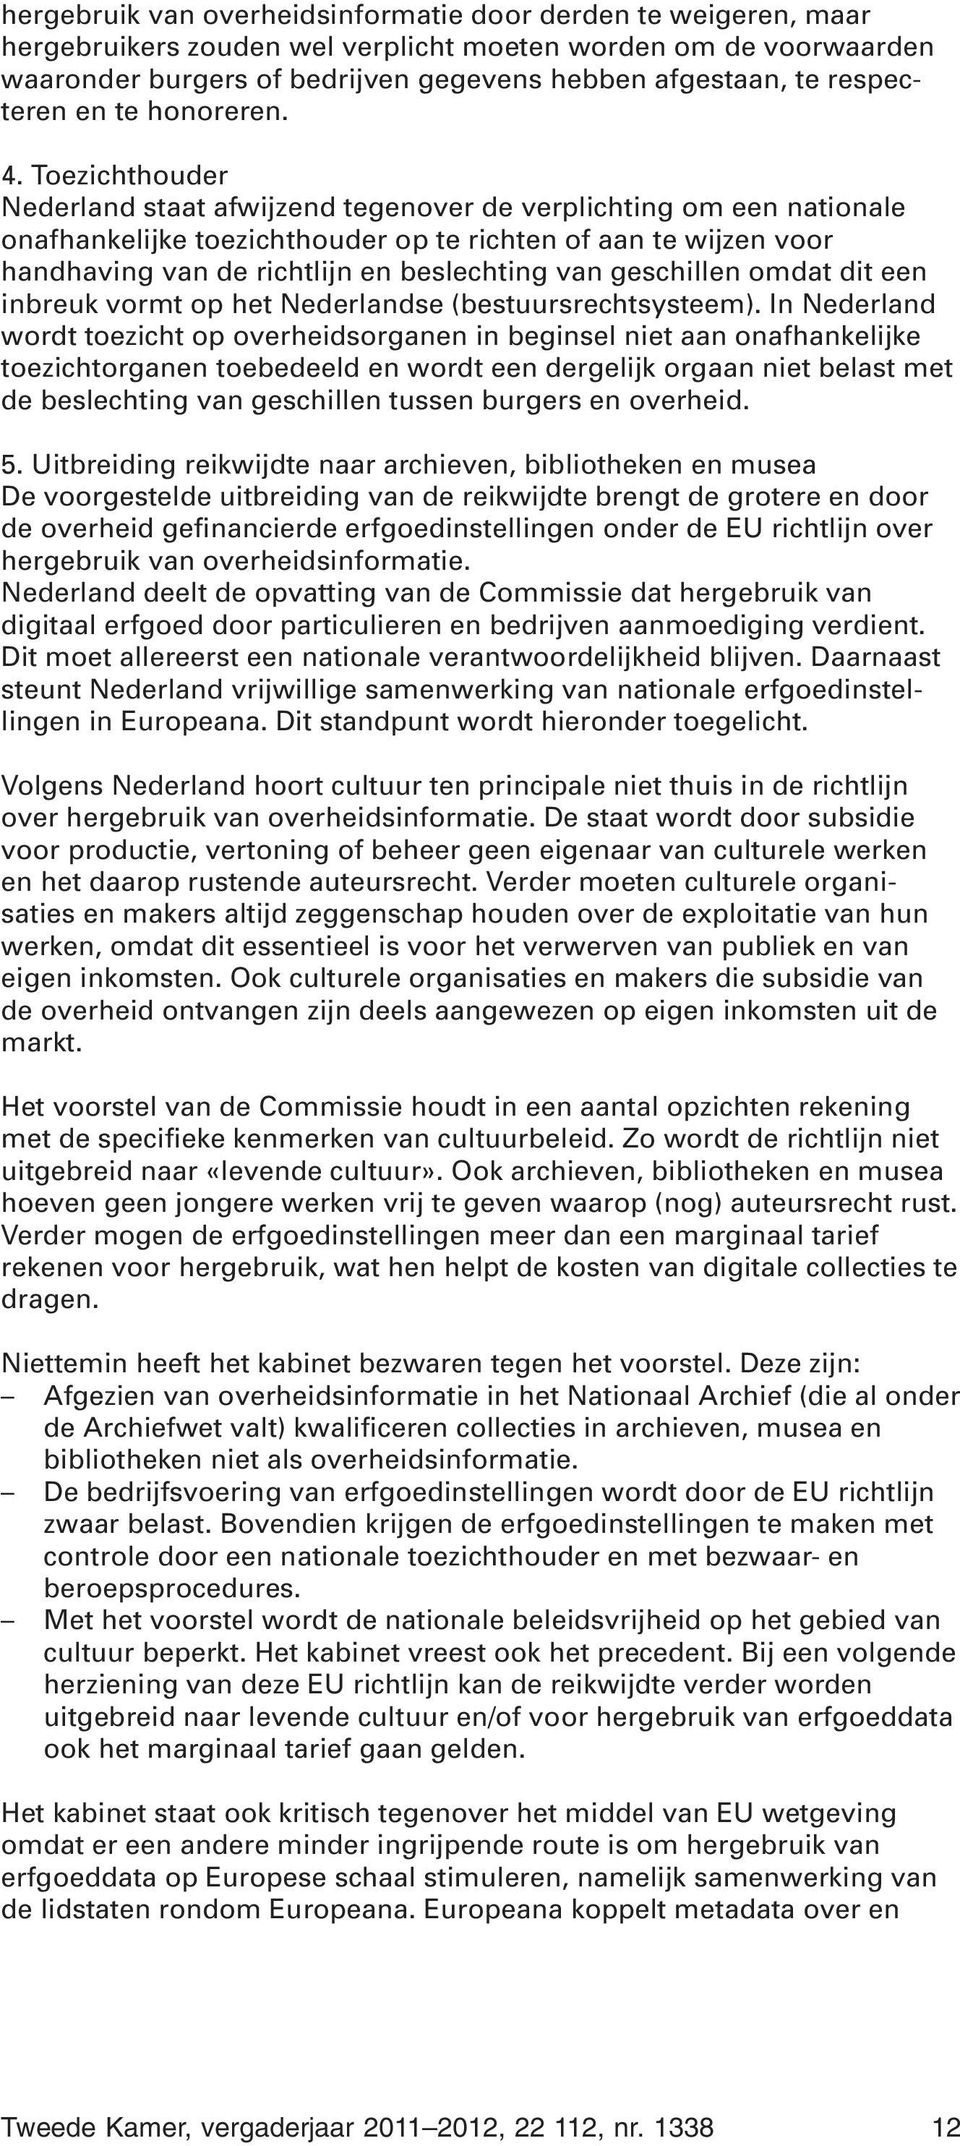 Toezichthouder Nederland staat afwijzend tegenover de verplichting om een nationale onafhankelijke toezichthouder op te richten of aan te wijzen voor handhaving van de richtlijn en beslechting van